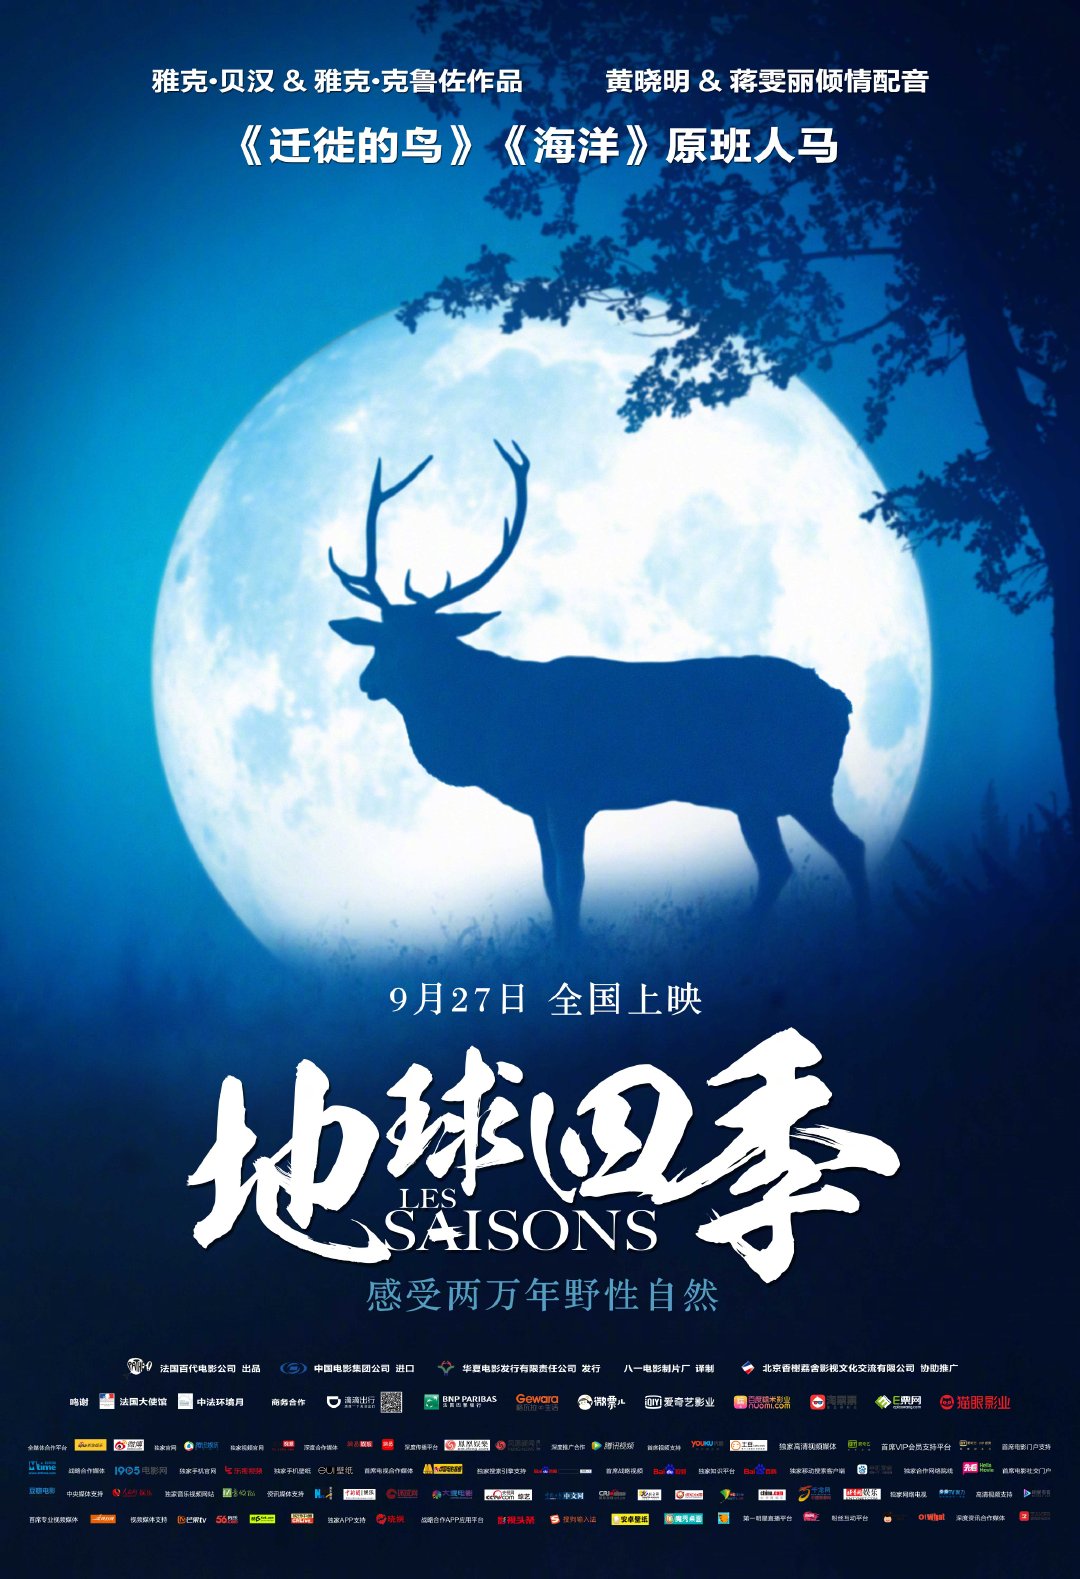 地球四季 - Seasons